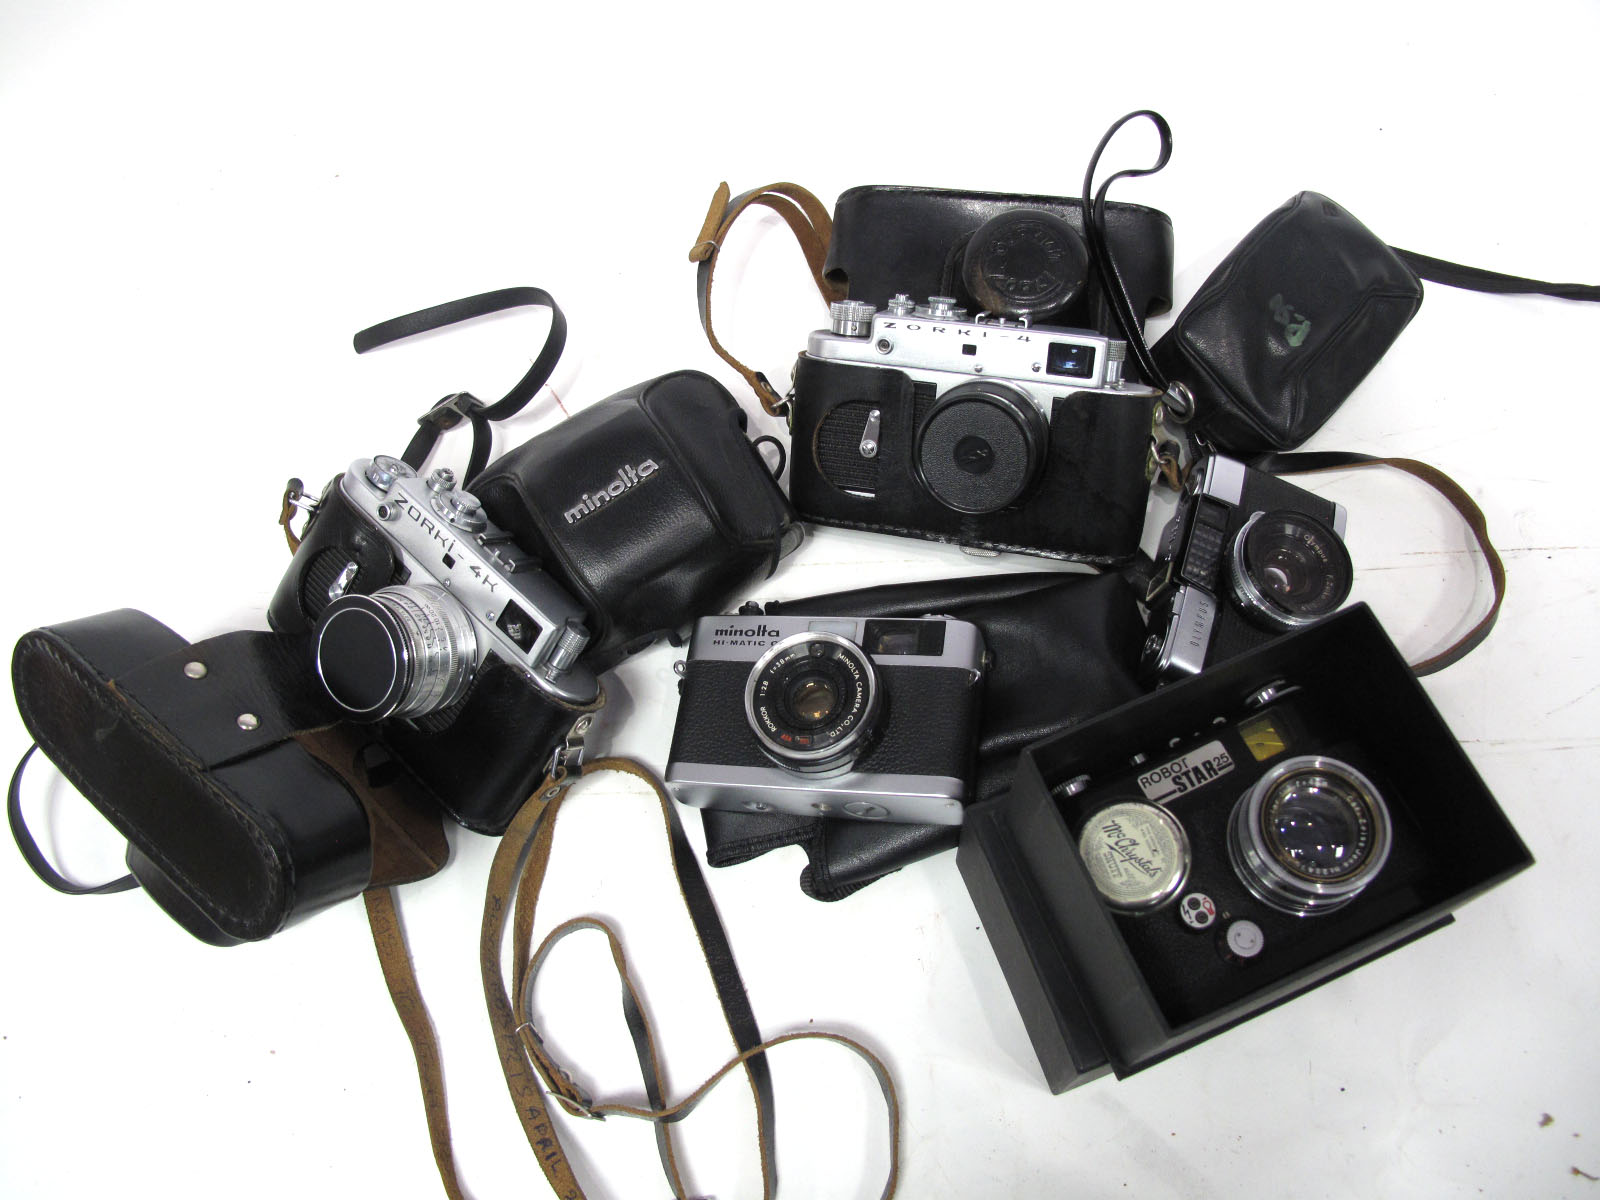 Minolta Hi-Matic G, with Minolta f=38mm lens, Zorki - 4 Camera with Jupiter 8 lens, Minolta Hi-Matic